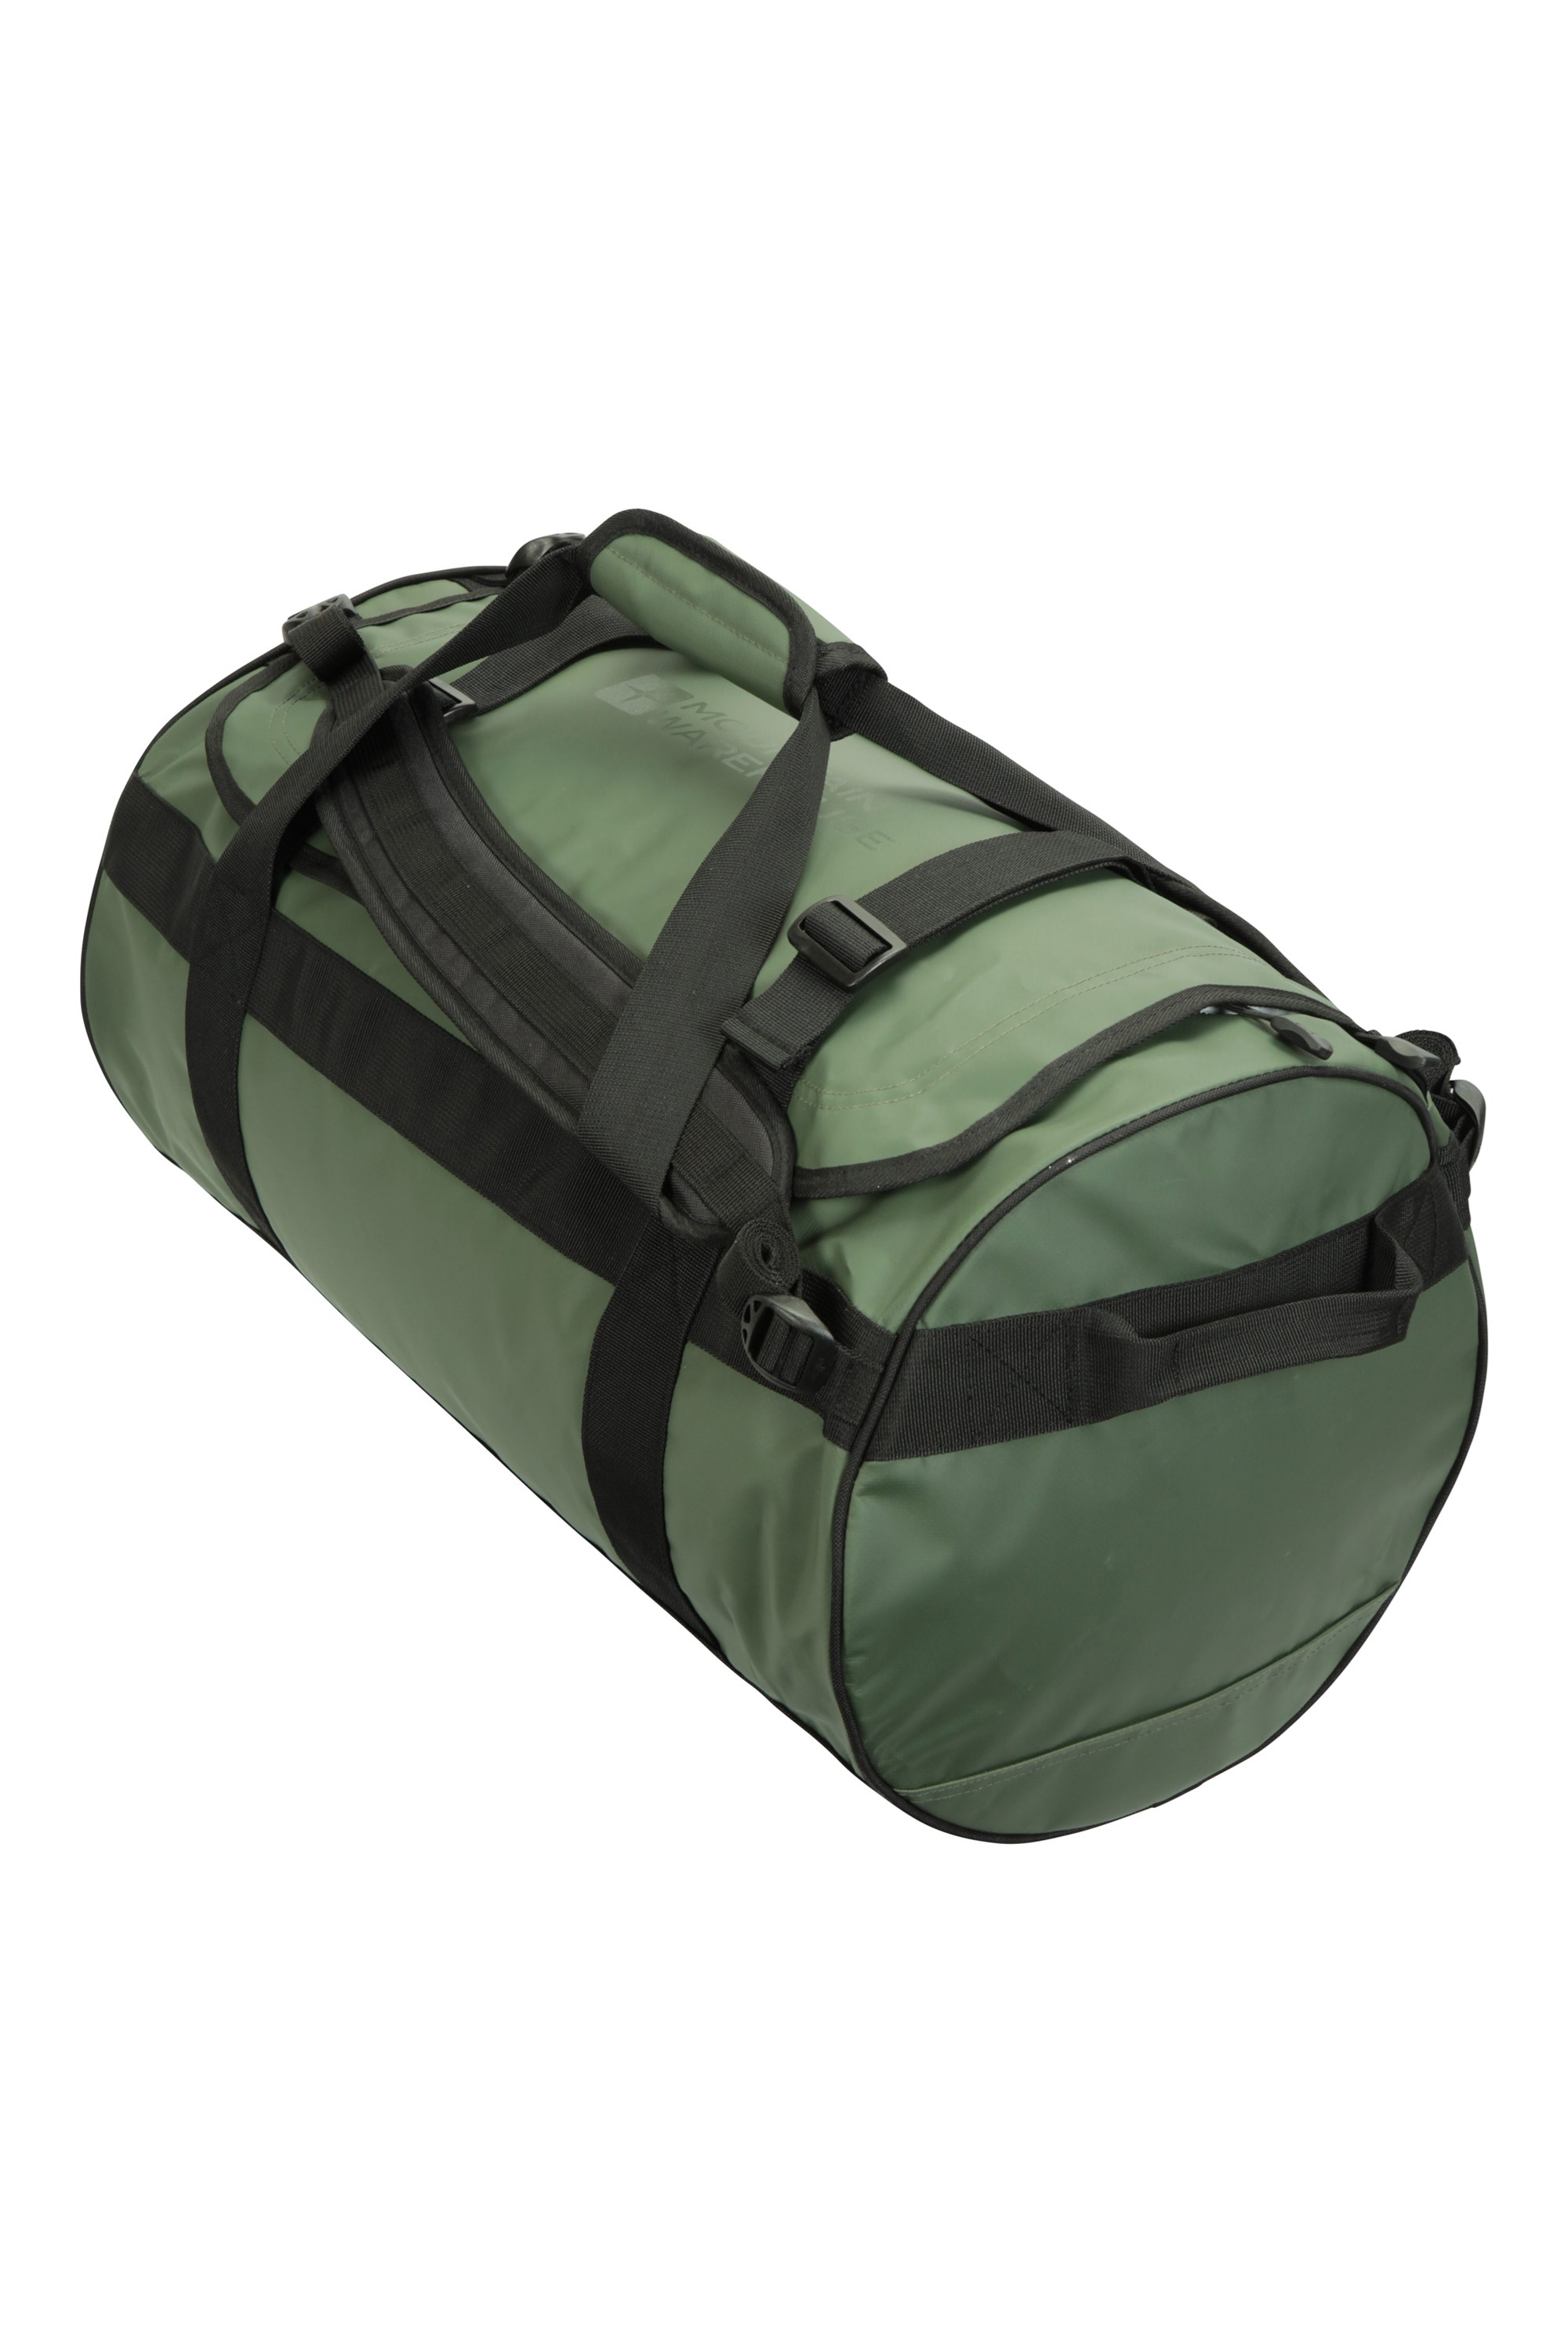 Cargo Bag - 60 Litres - Green